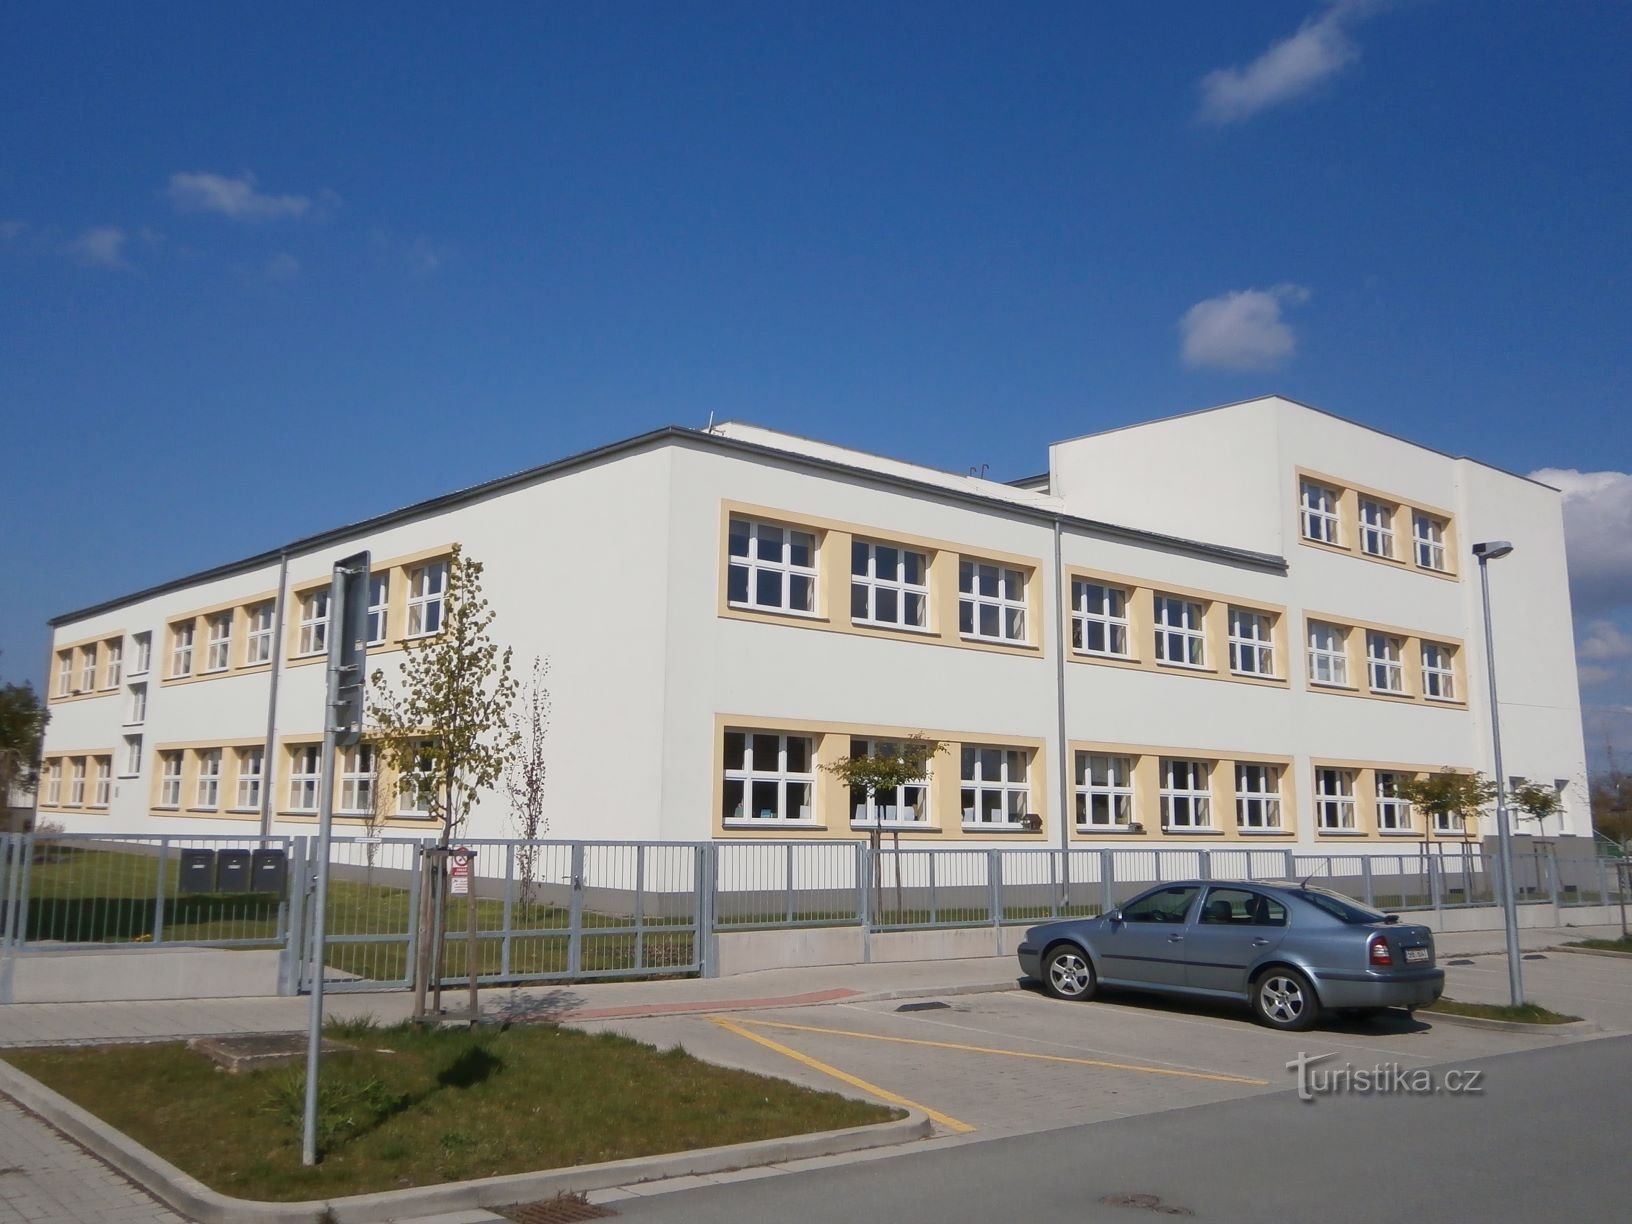 Vista laterale della scuola giubilare di Masaryk (Černilov, 30.4.2017/XNUMX/XNUMX)